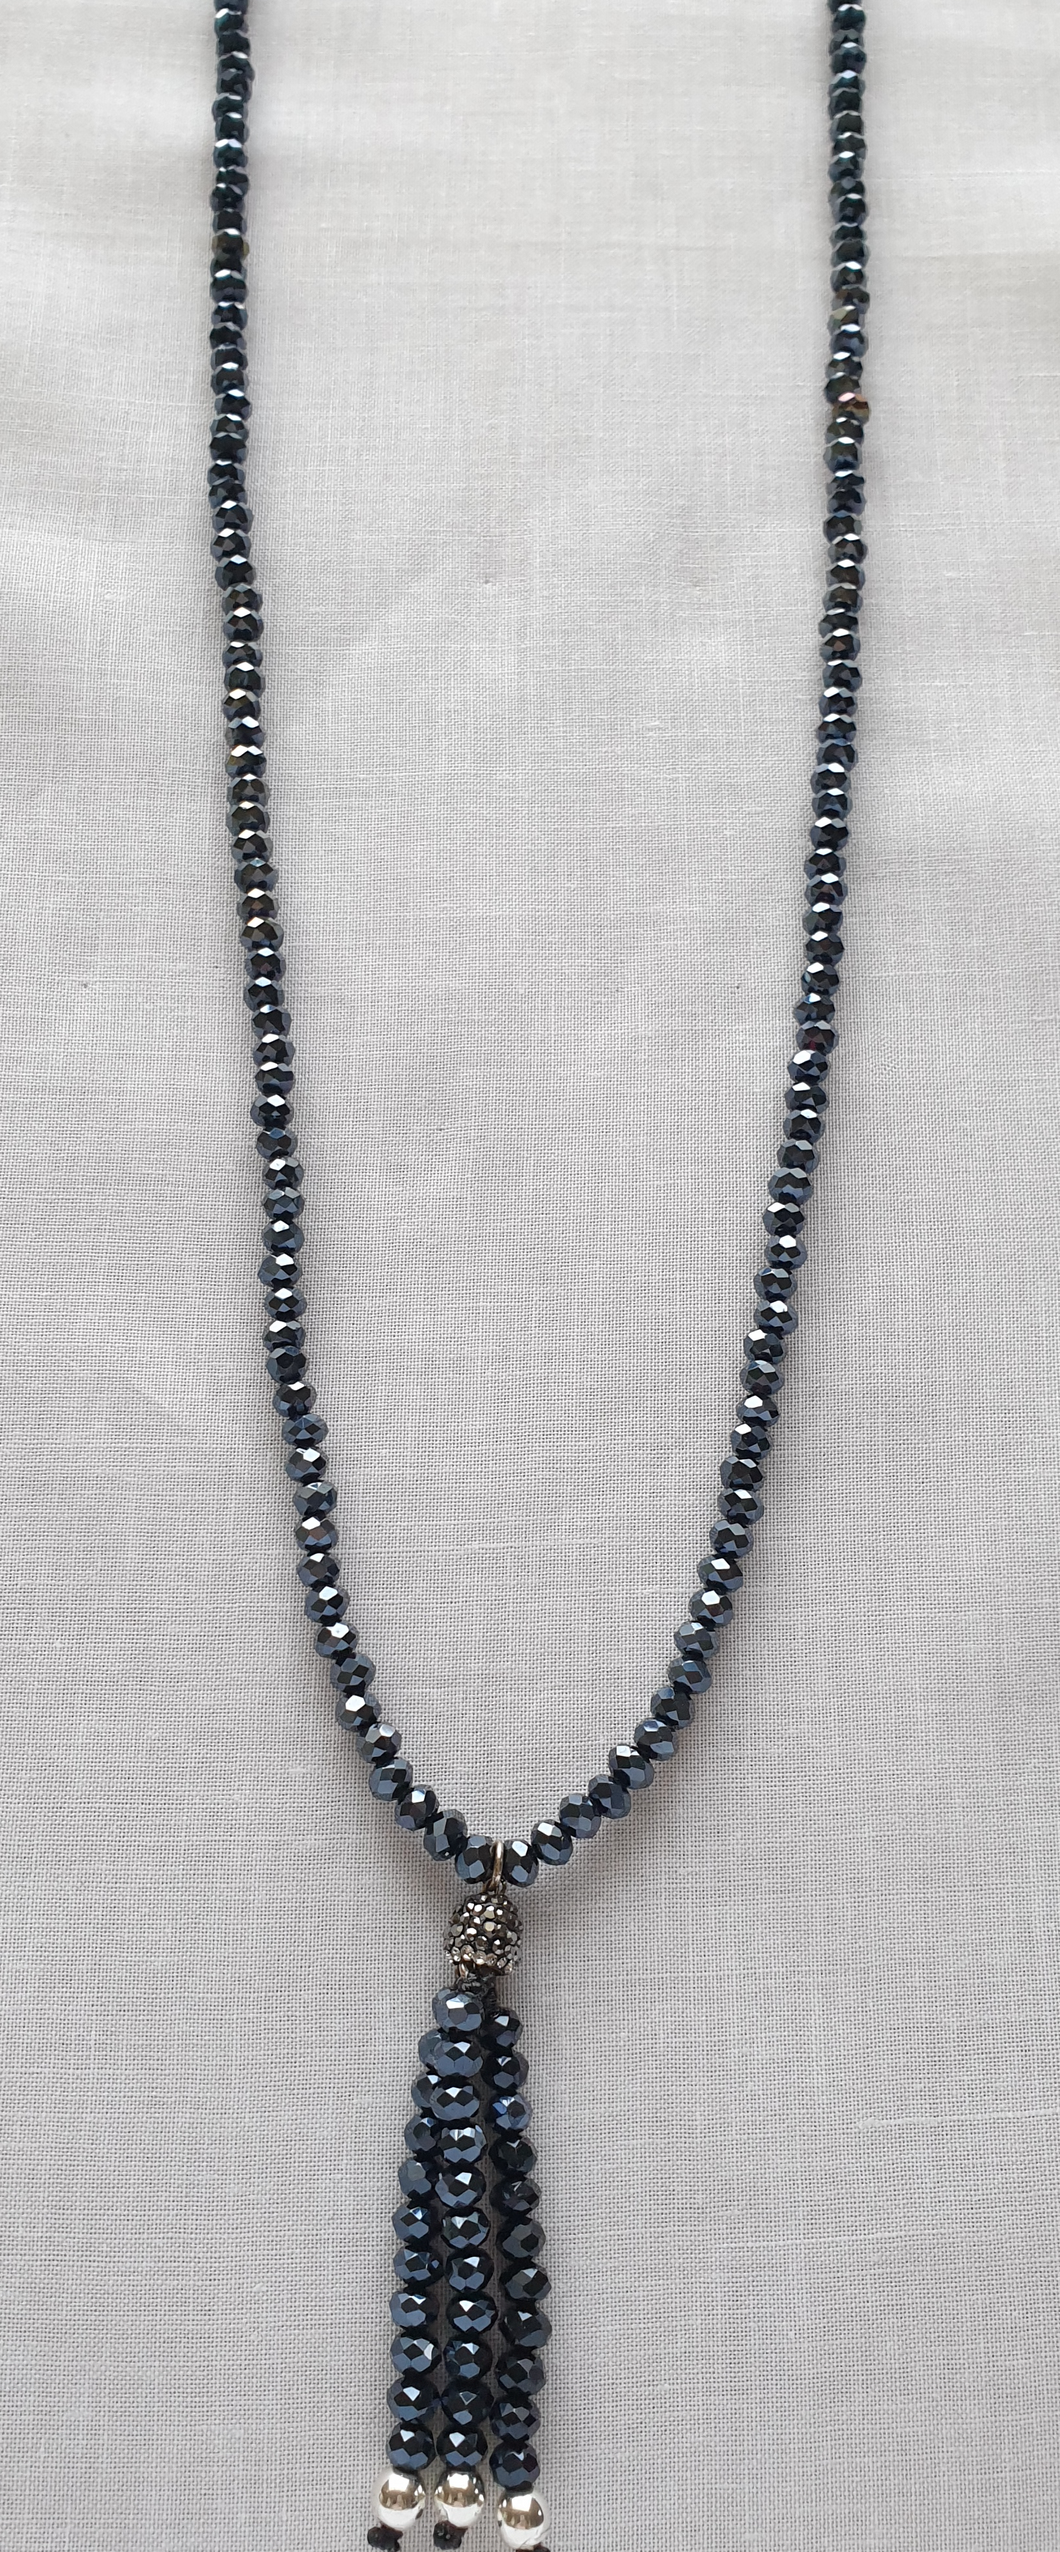 Crystal tassle necklace